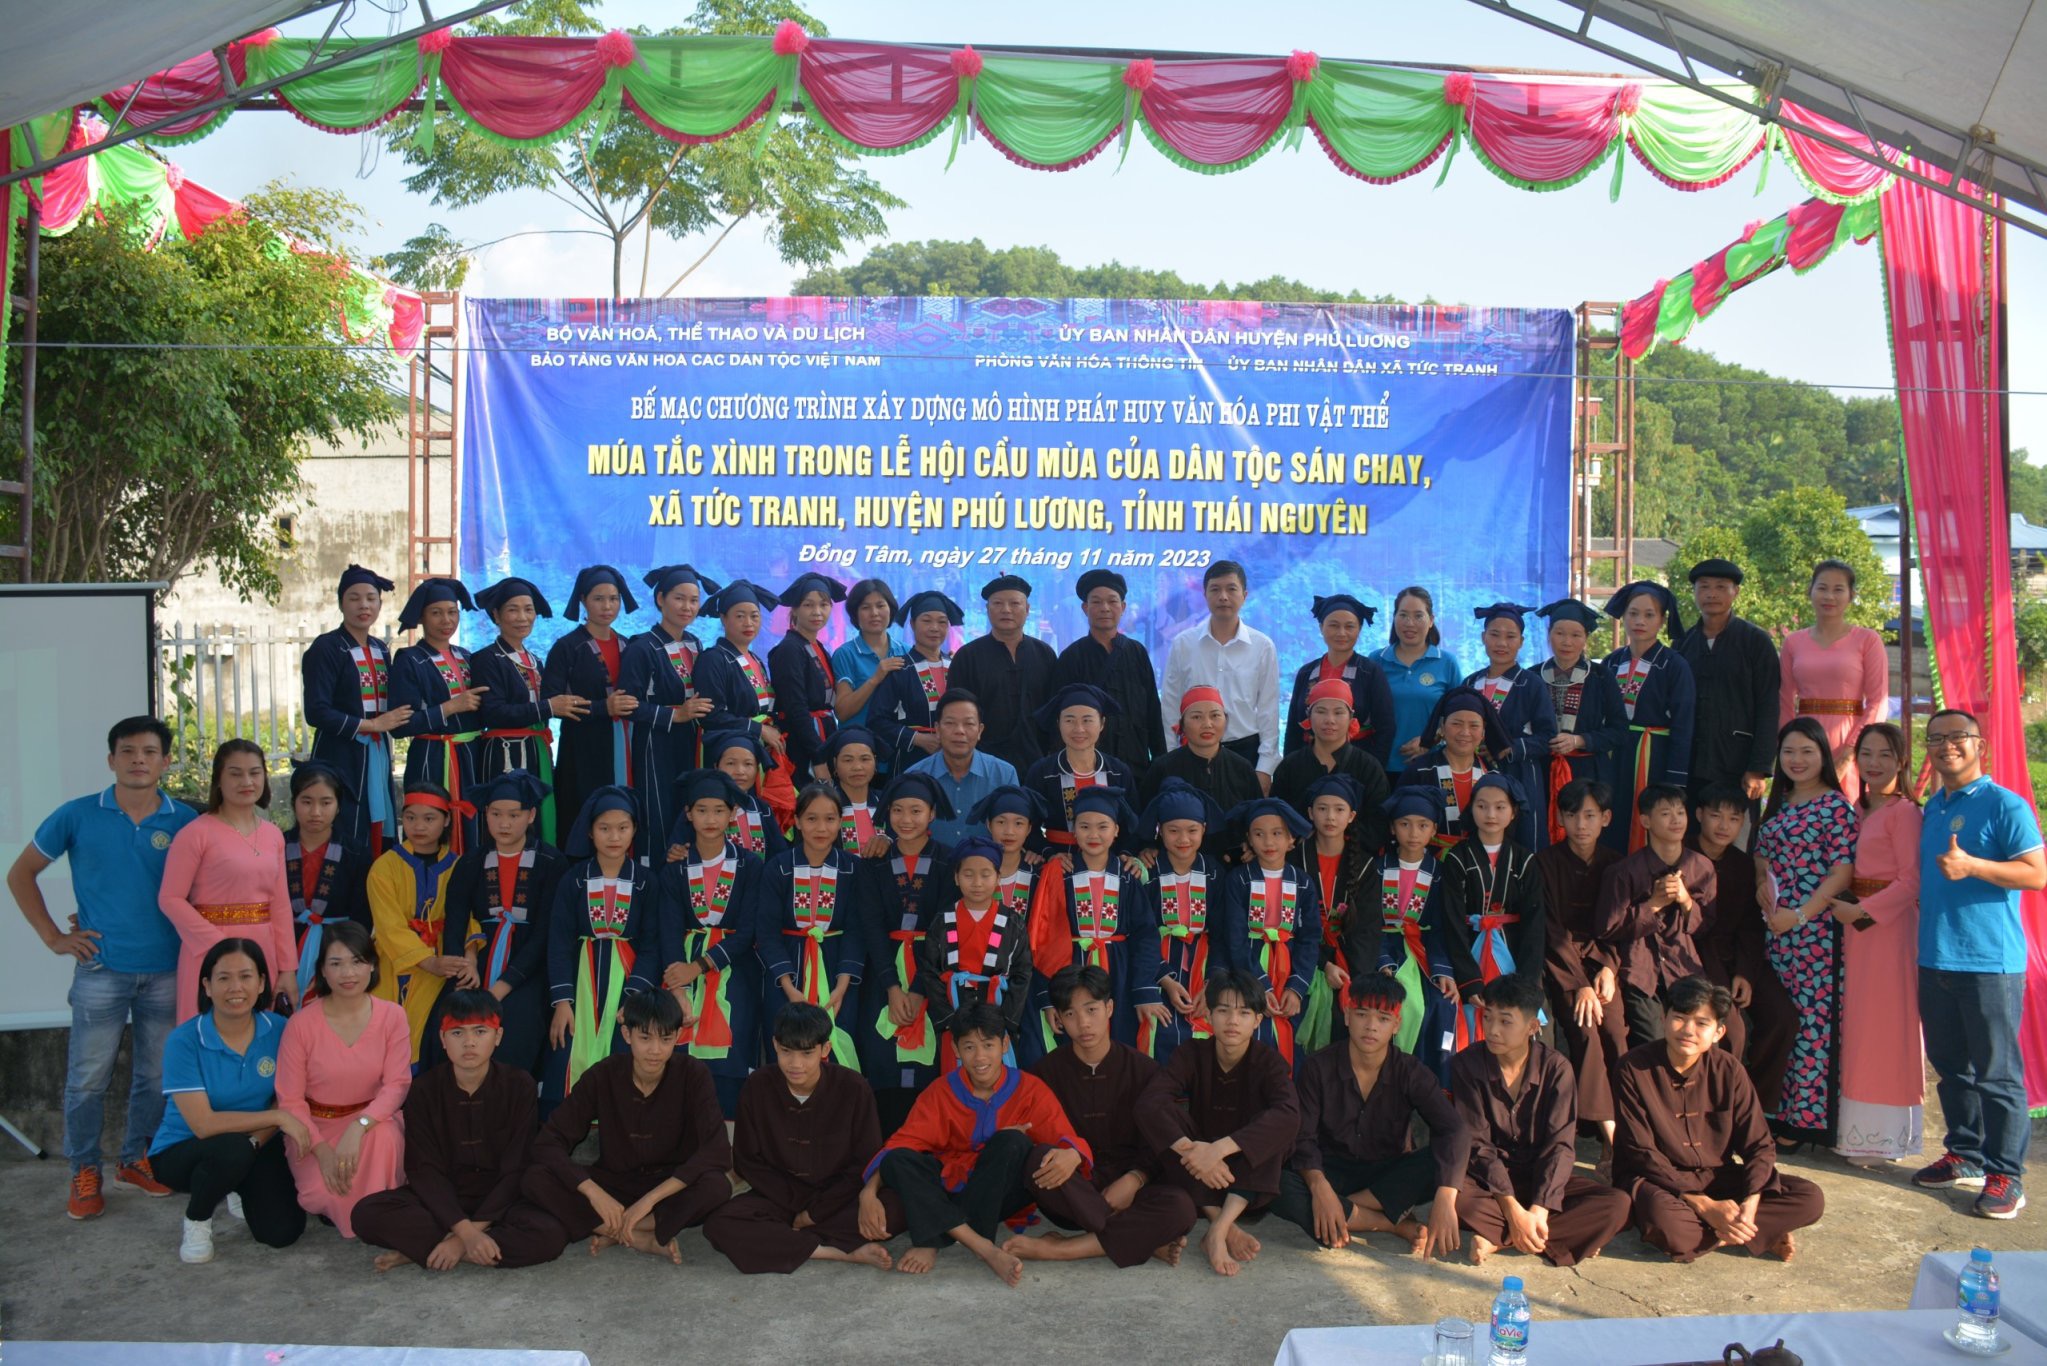 Bảo tồn, phát huy múa Tắc Xình dân tộc Sán Chay huyện Phú Lương